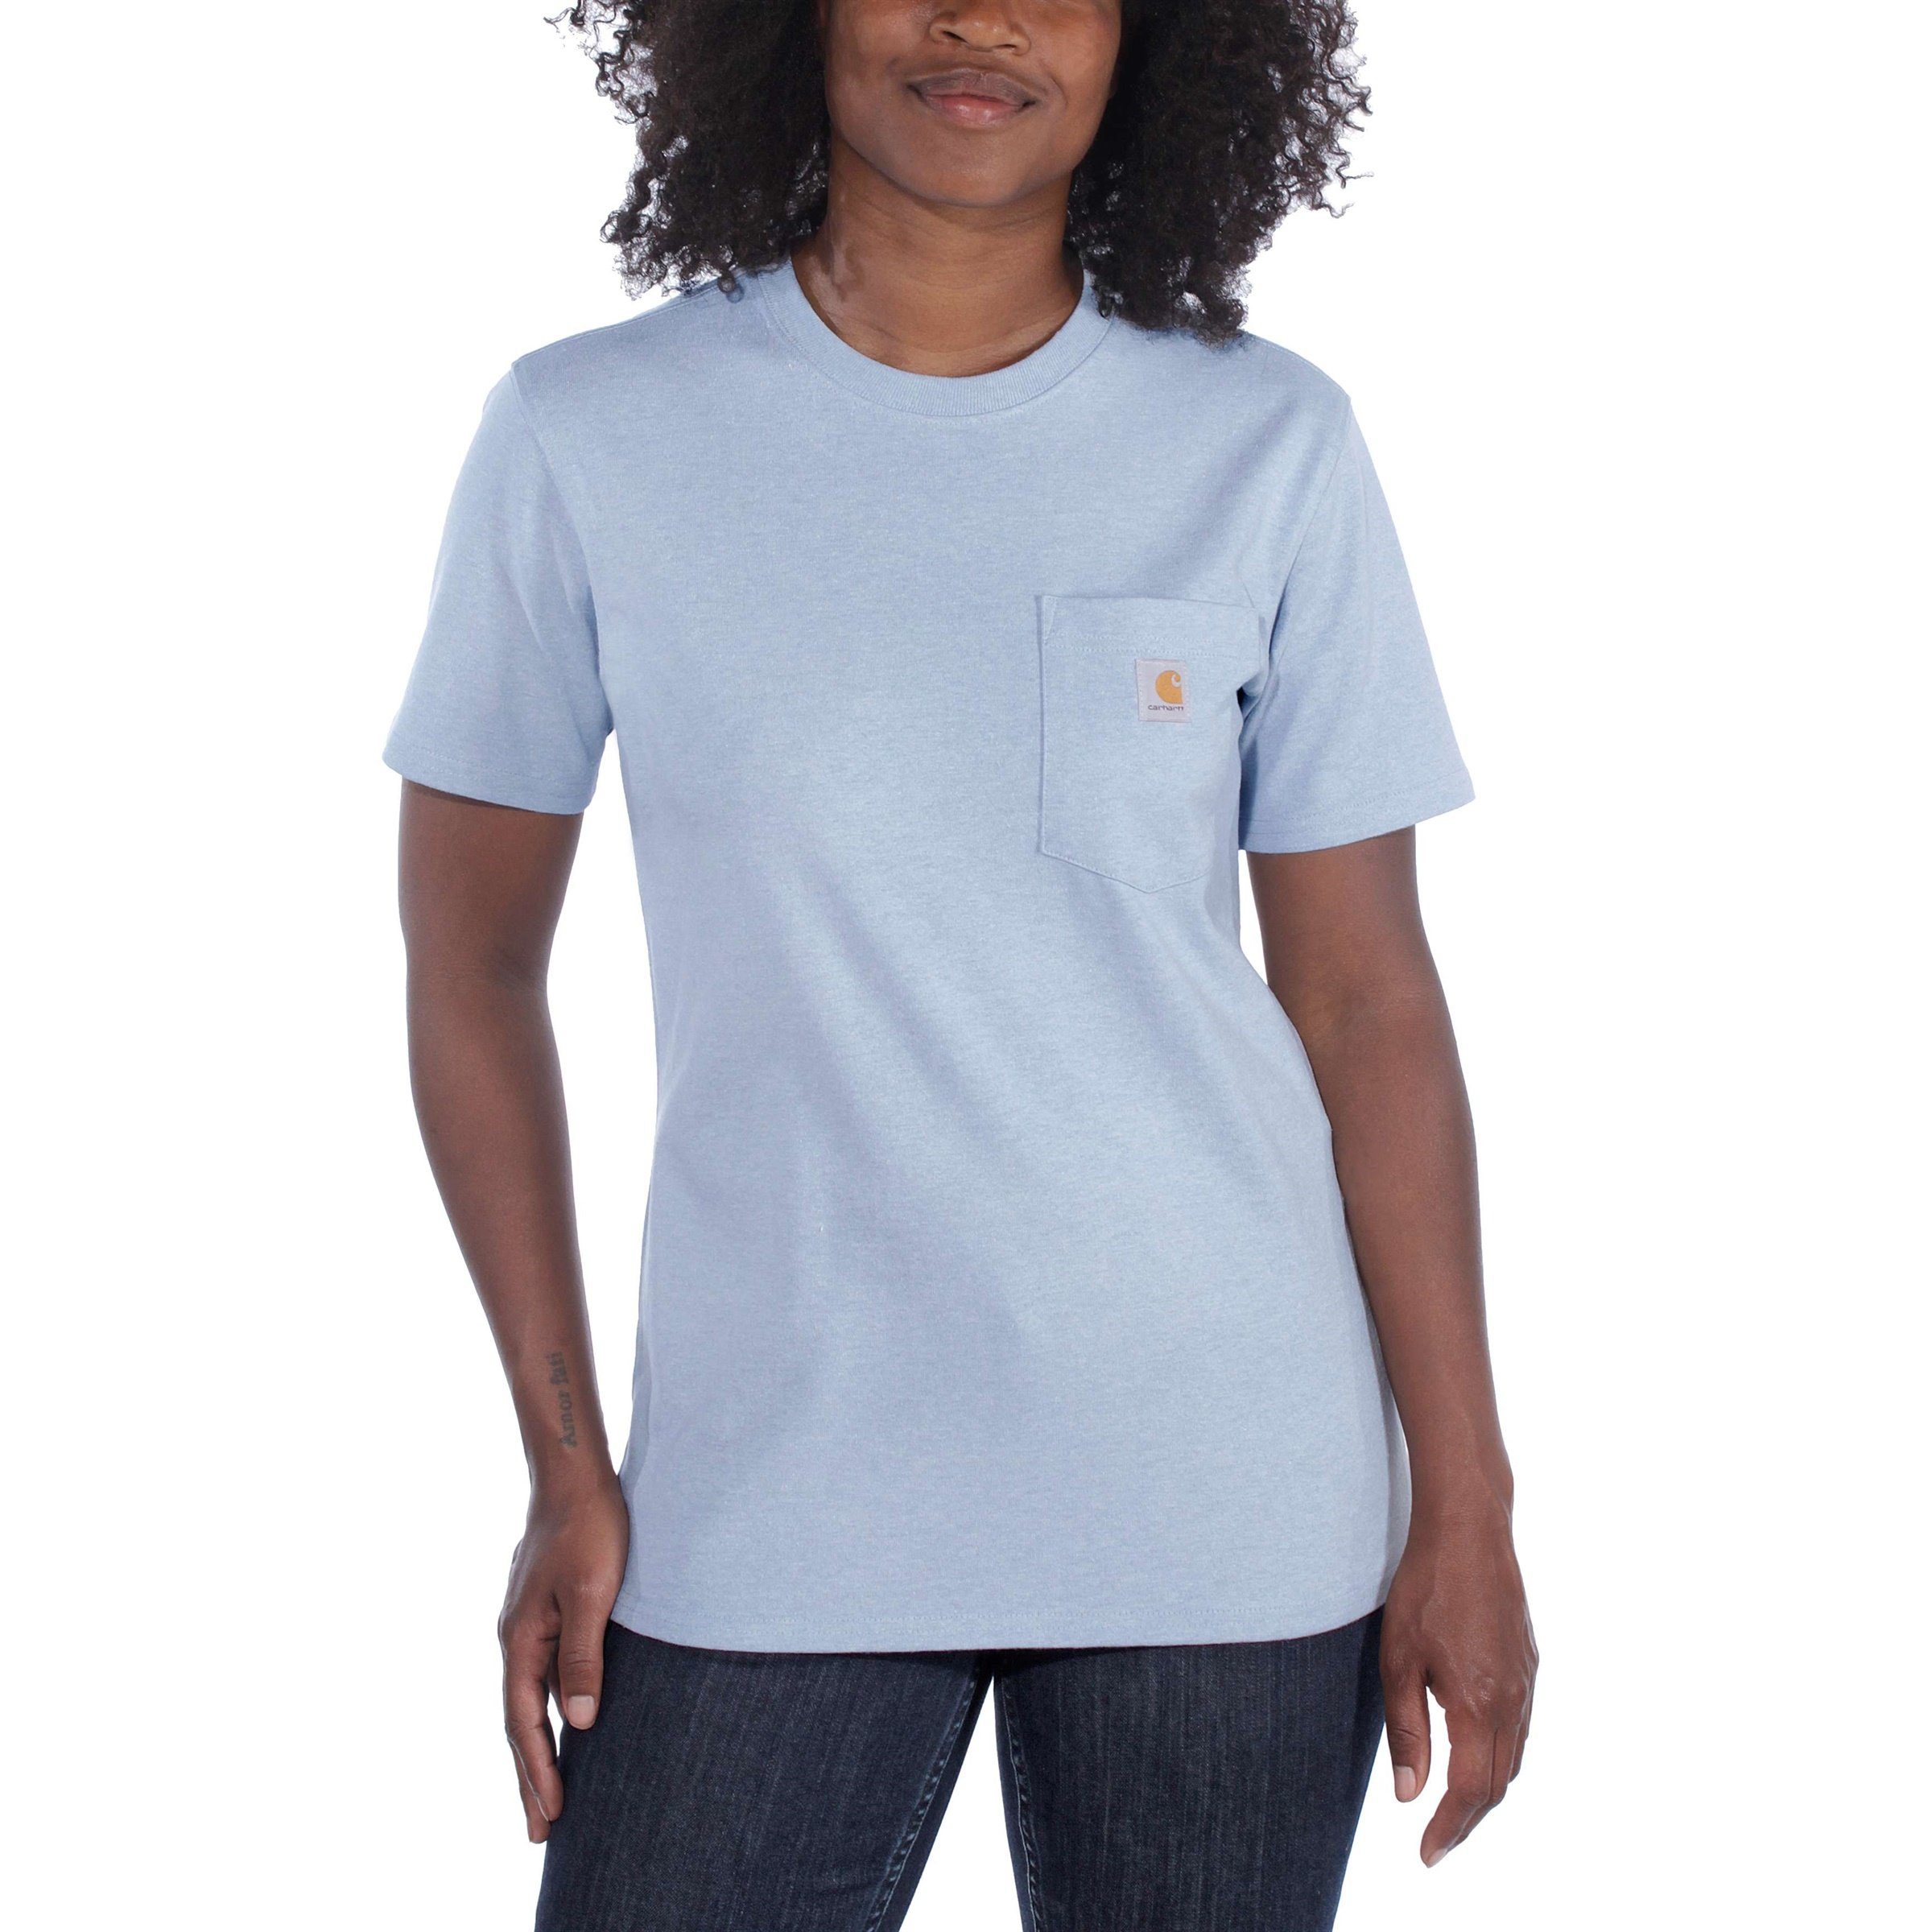 Heavyweight Carhartt Fit T-Shirt T-Shirt Pocket Adult blue powder nep Damen Carhartt Short-Sleeve Loose